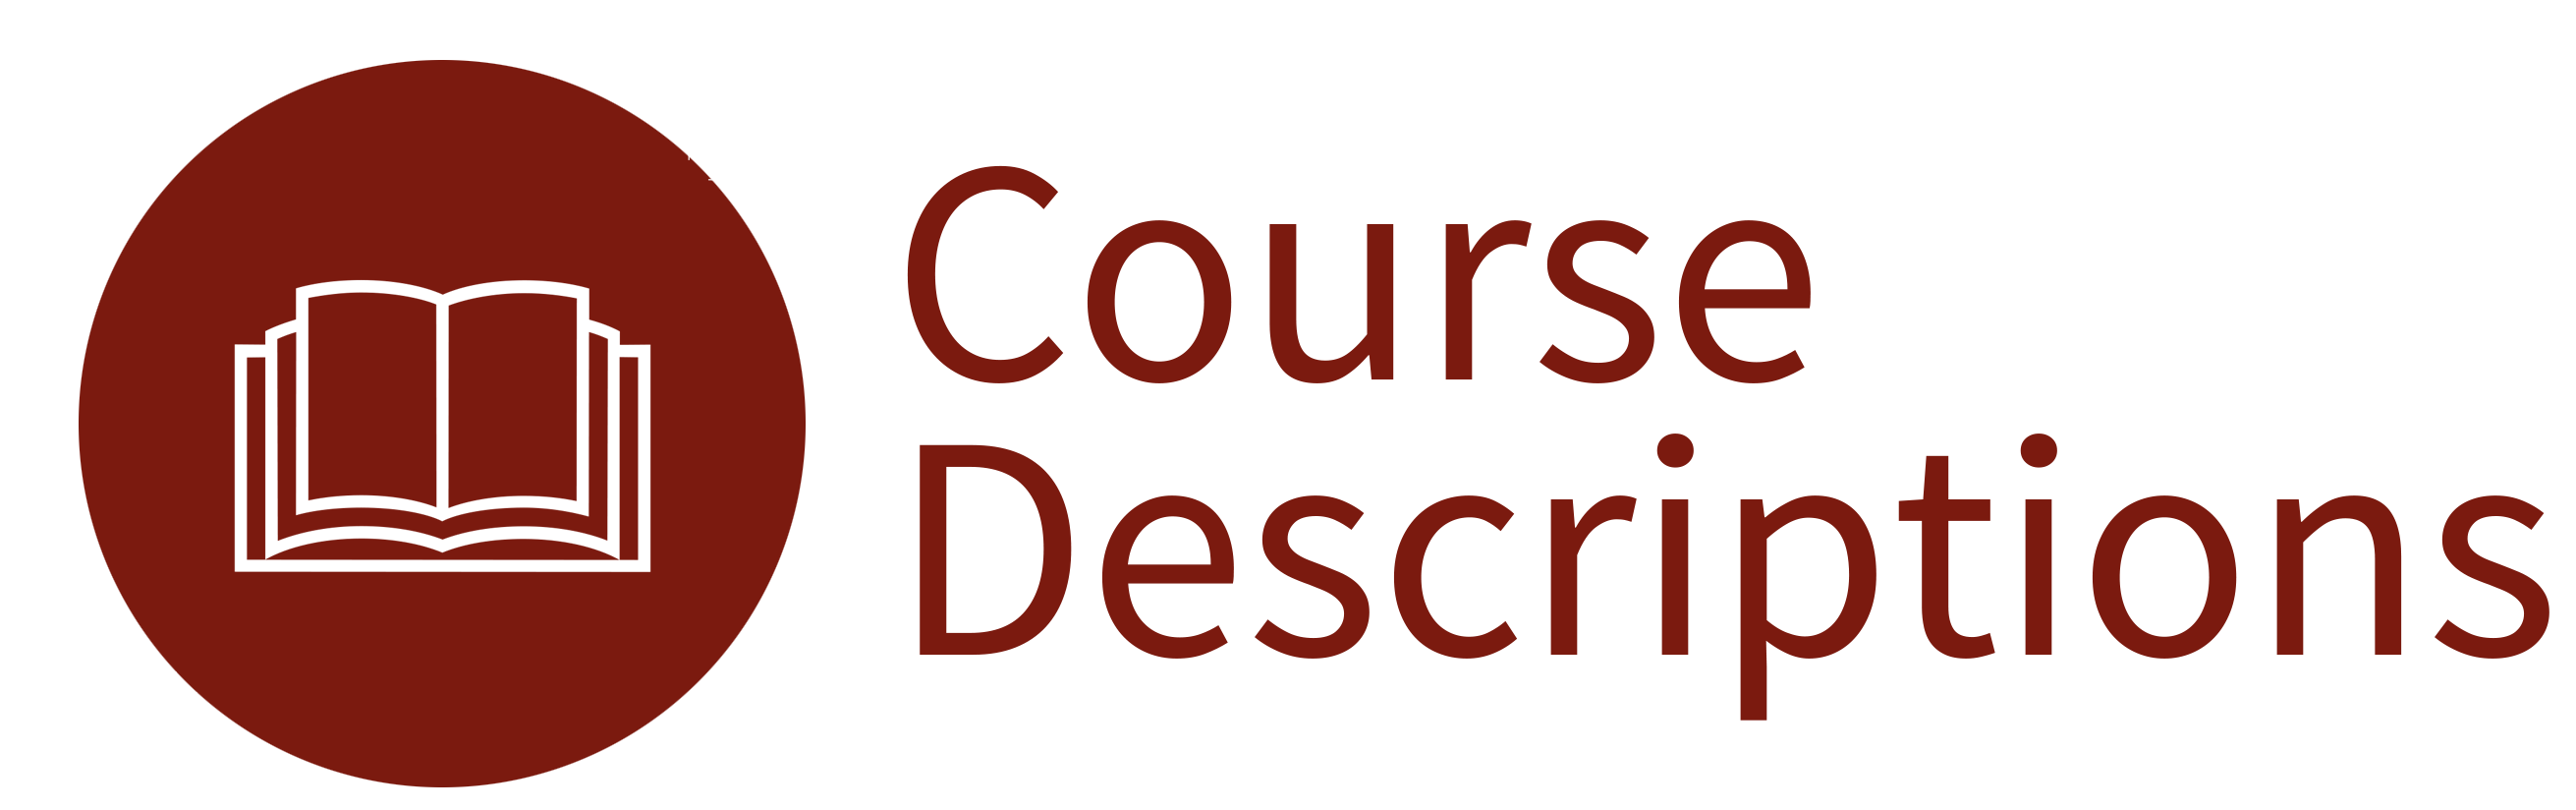 Course description